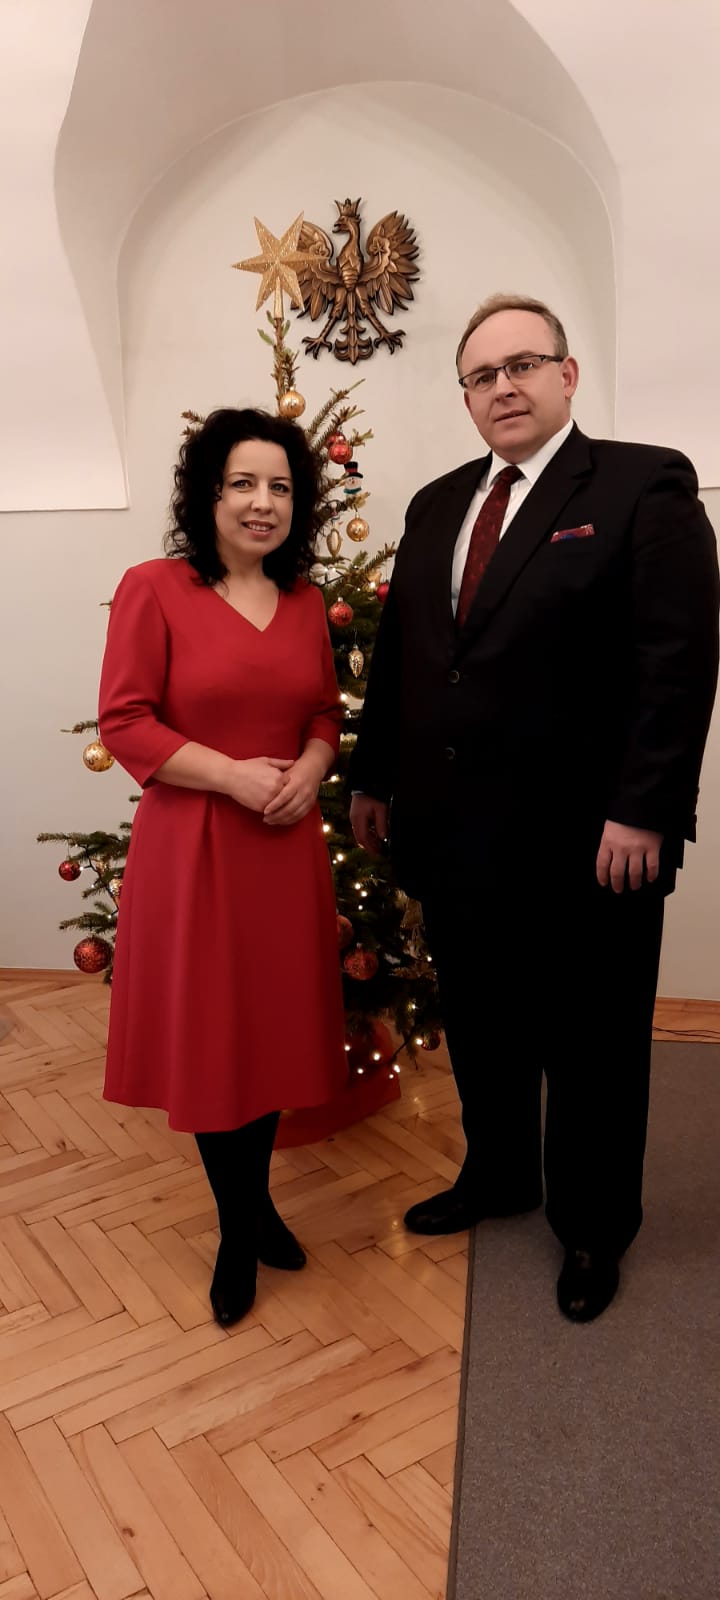 Od lewej: Anna Grygierek burmistrz Strumienia i Janusz Pierzyna wójt Gminy Jasienica.